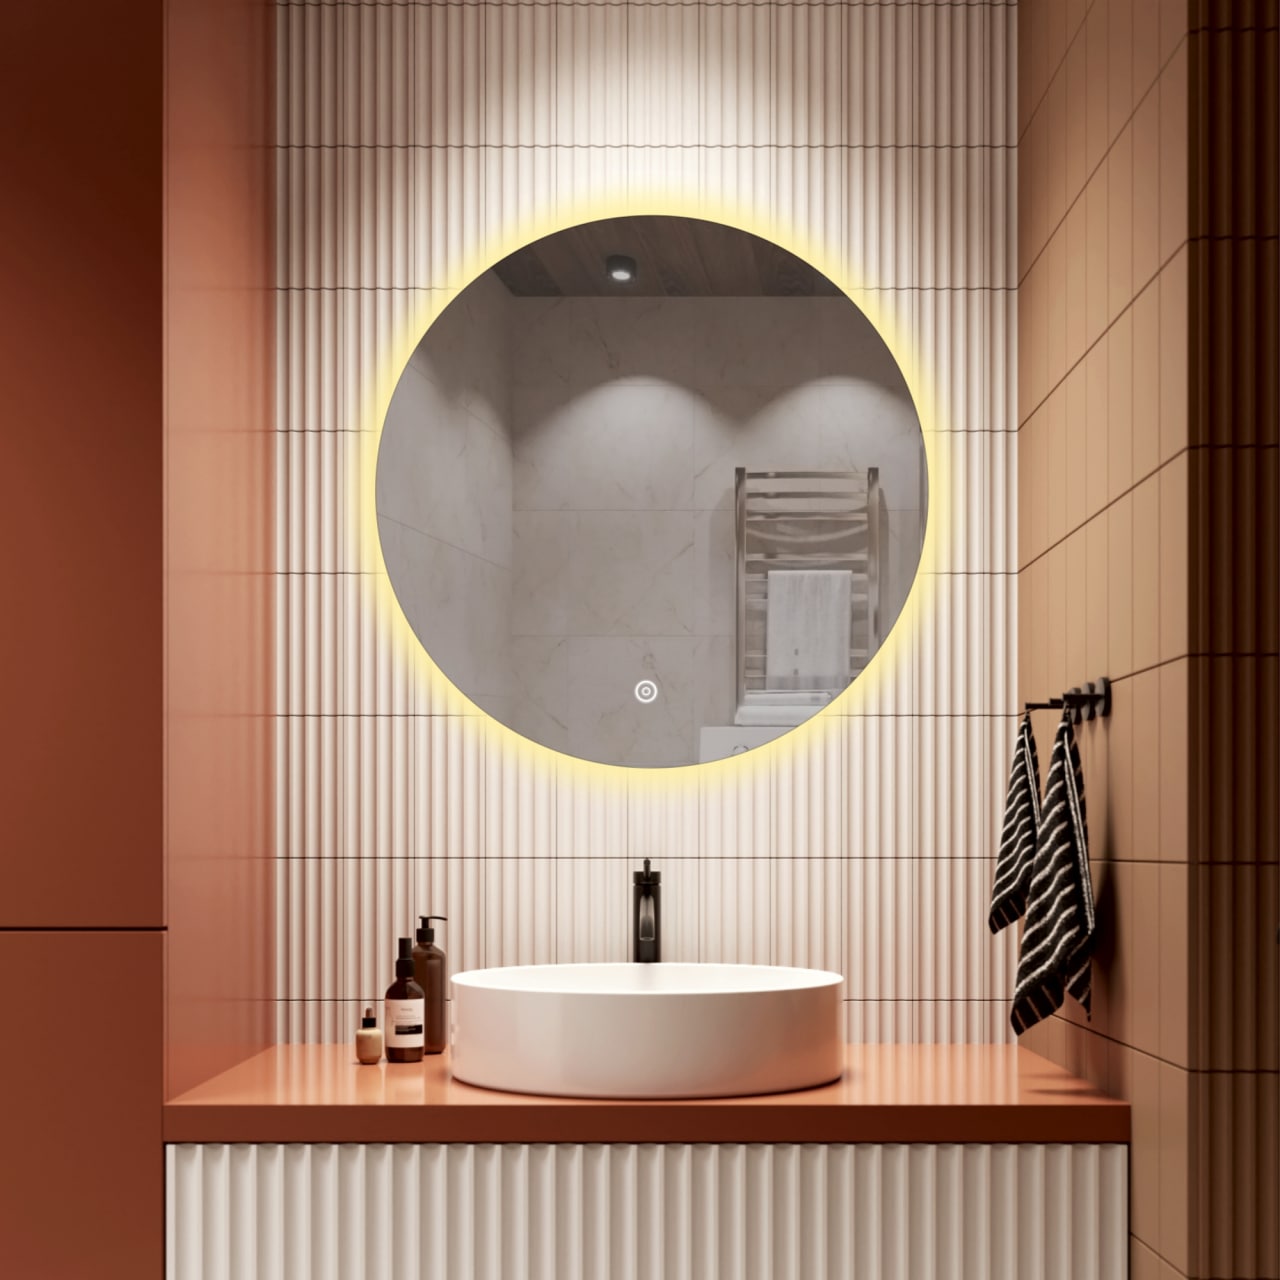 Зеркало для ванной Alfa Mirrors с теплой подсветкой 3200К круглое 80см, арт. Na-8Na-8t зеркало silver mirrors